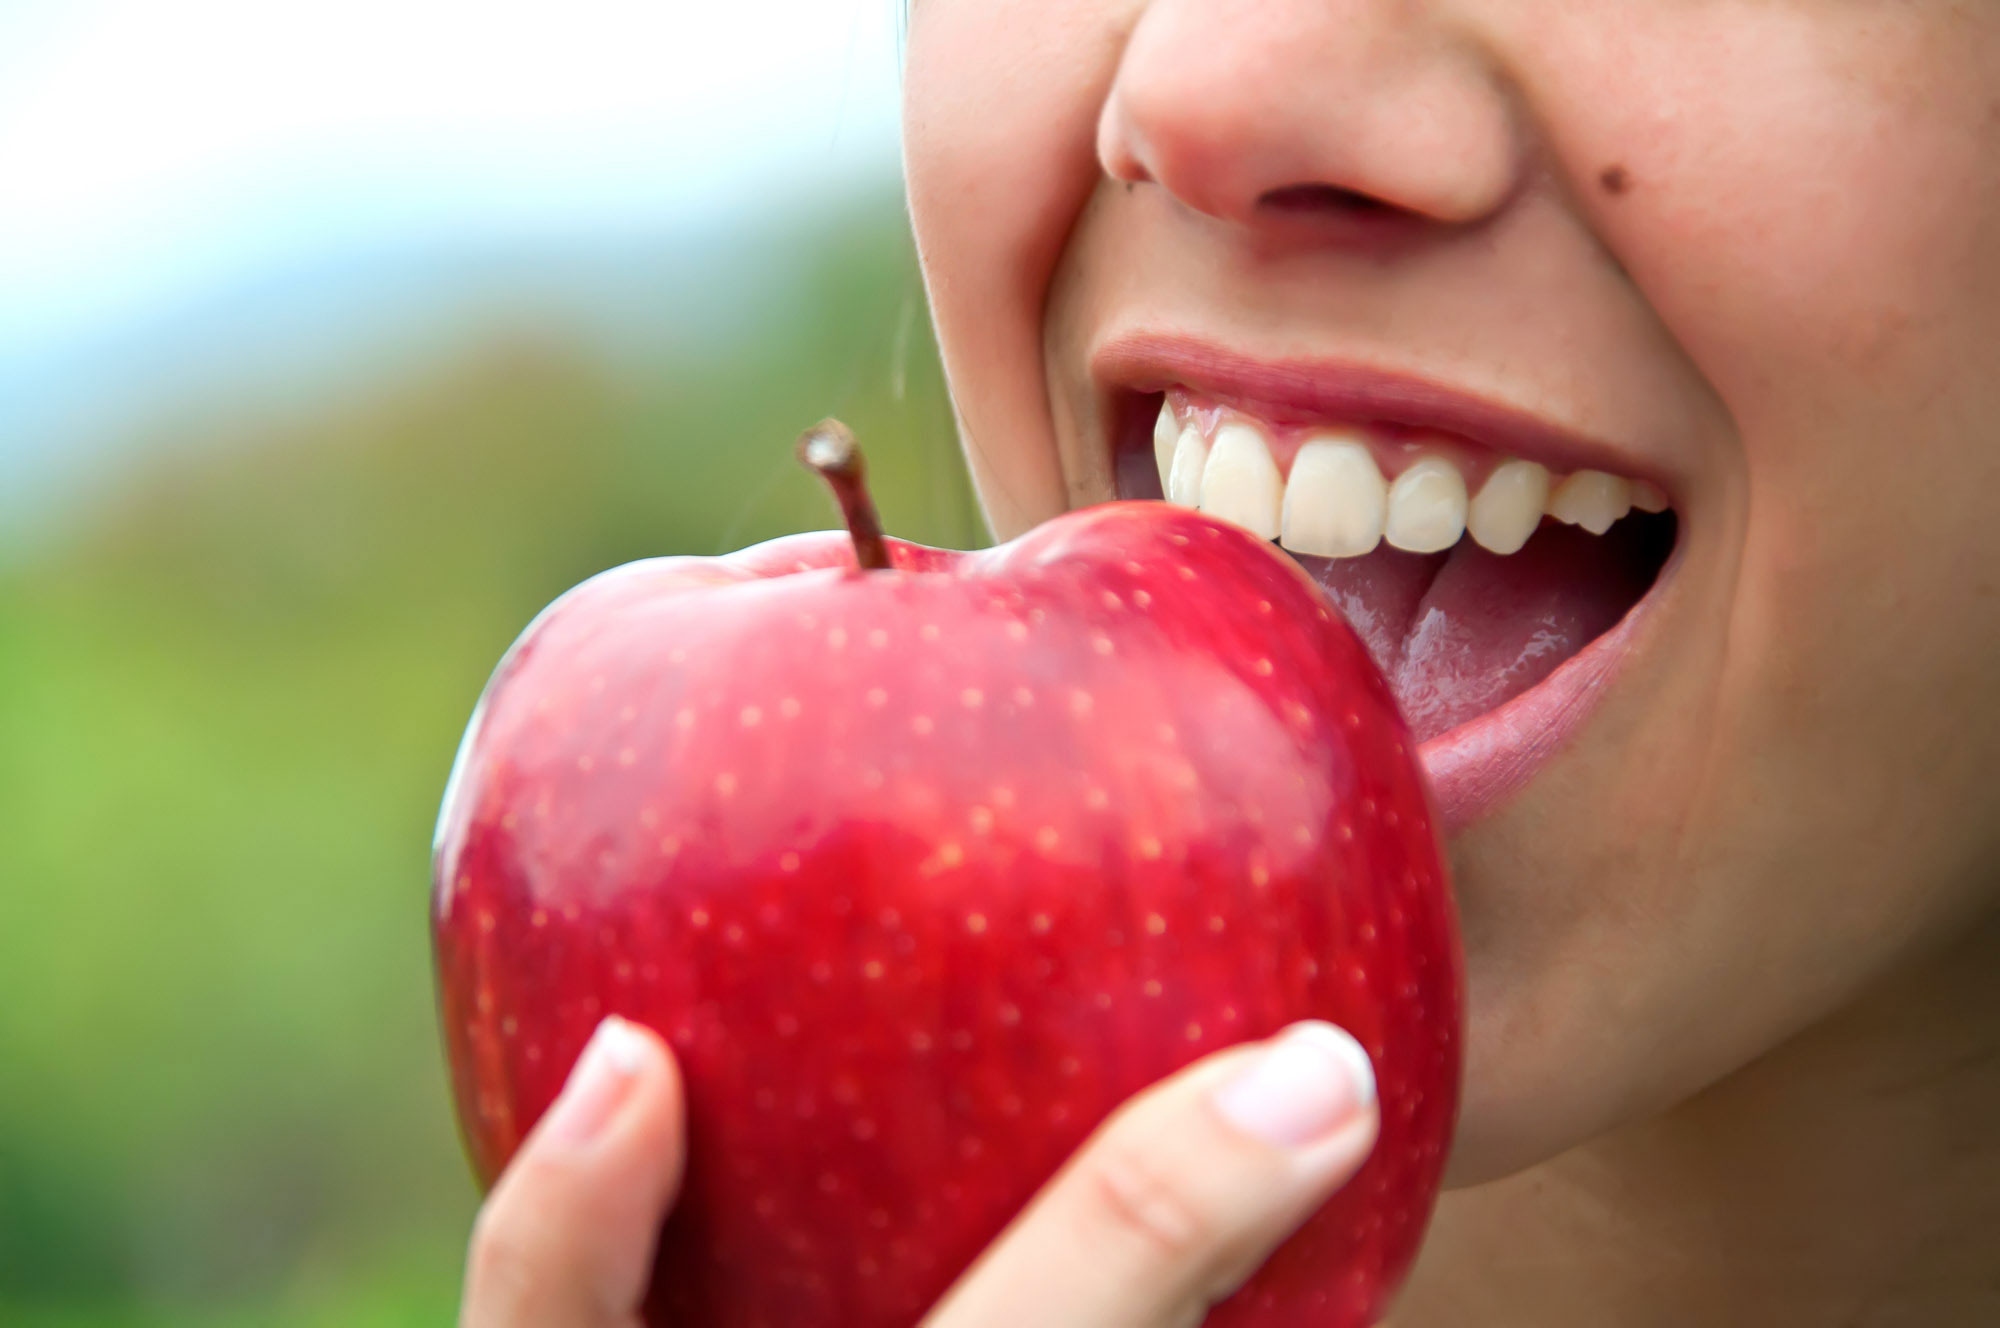 healthy teeth biting an apple